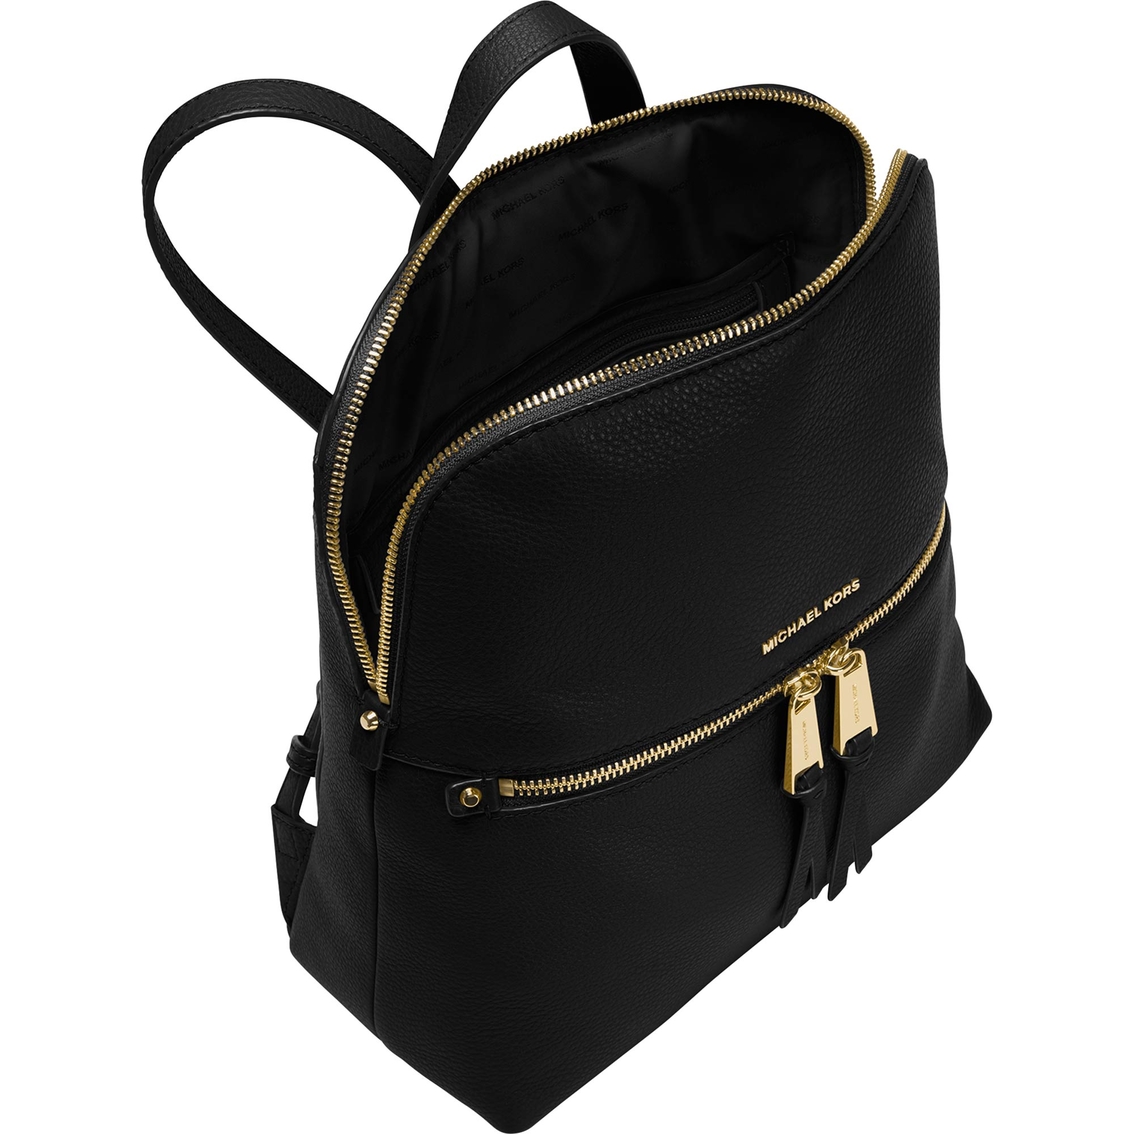 Michael Kors Rhea Medium Slim Leather Backpack - Image 2 of 2